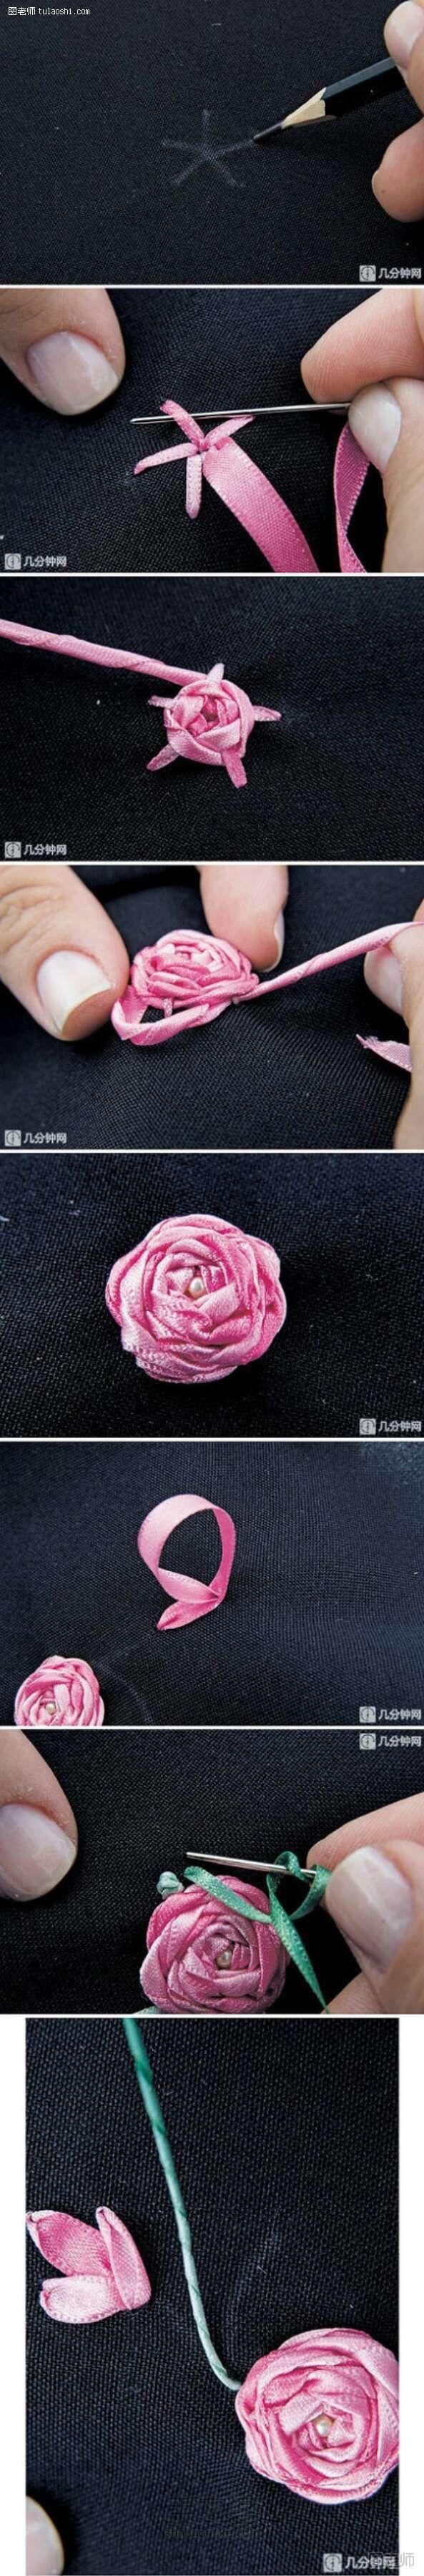 编织教程图解【图文】 用布来绣出一朵玫瑰吧 布艺教程